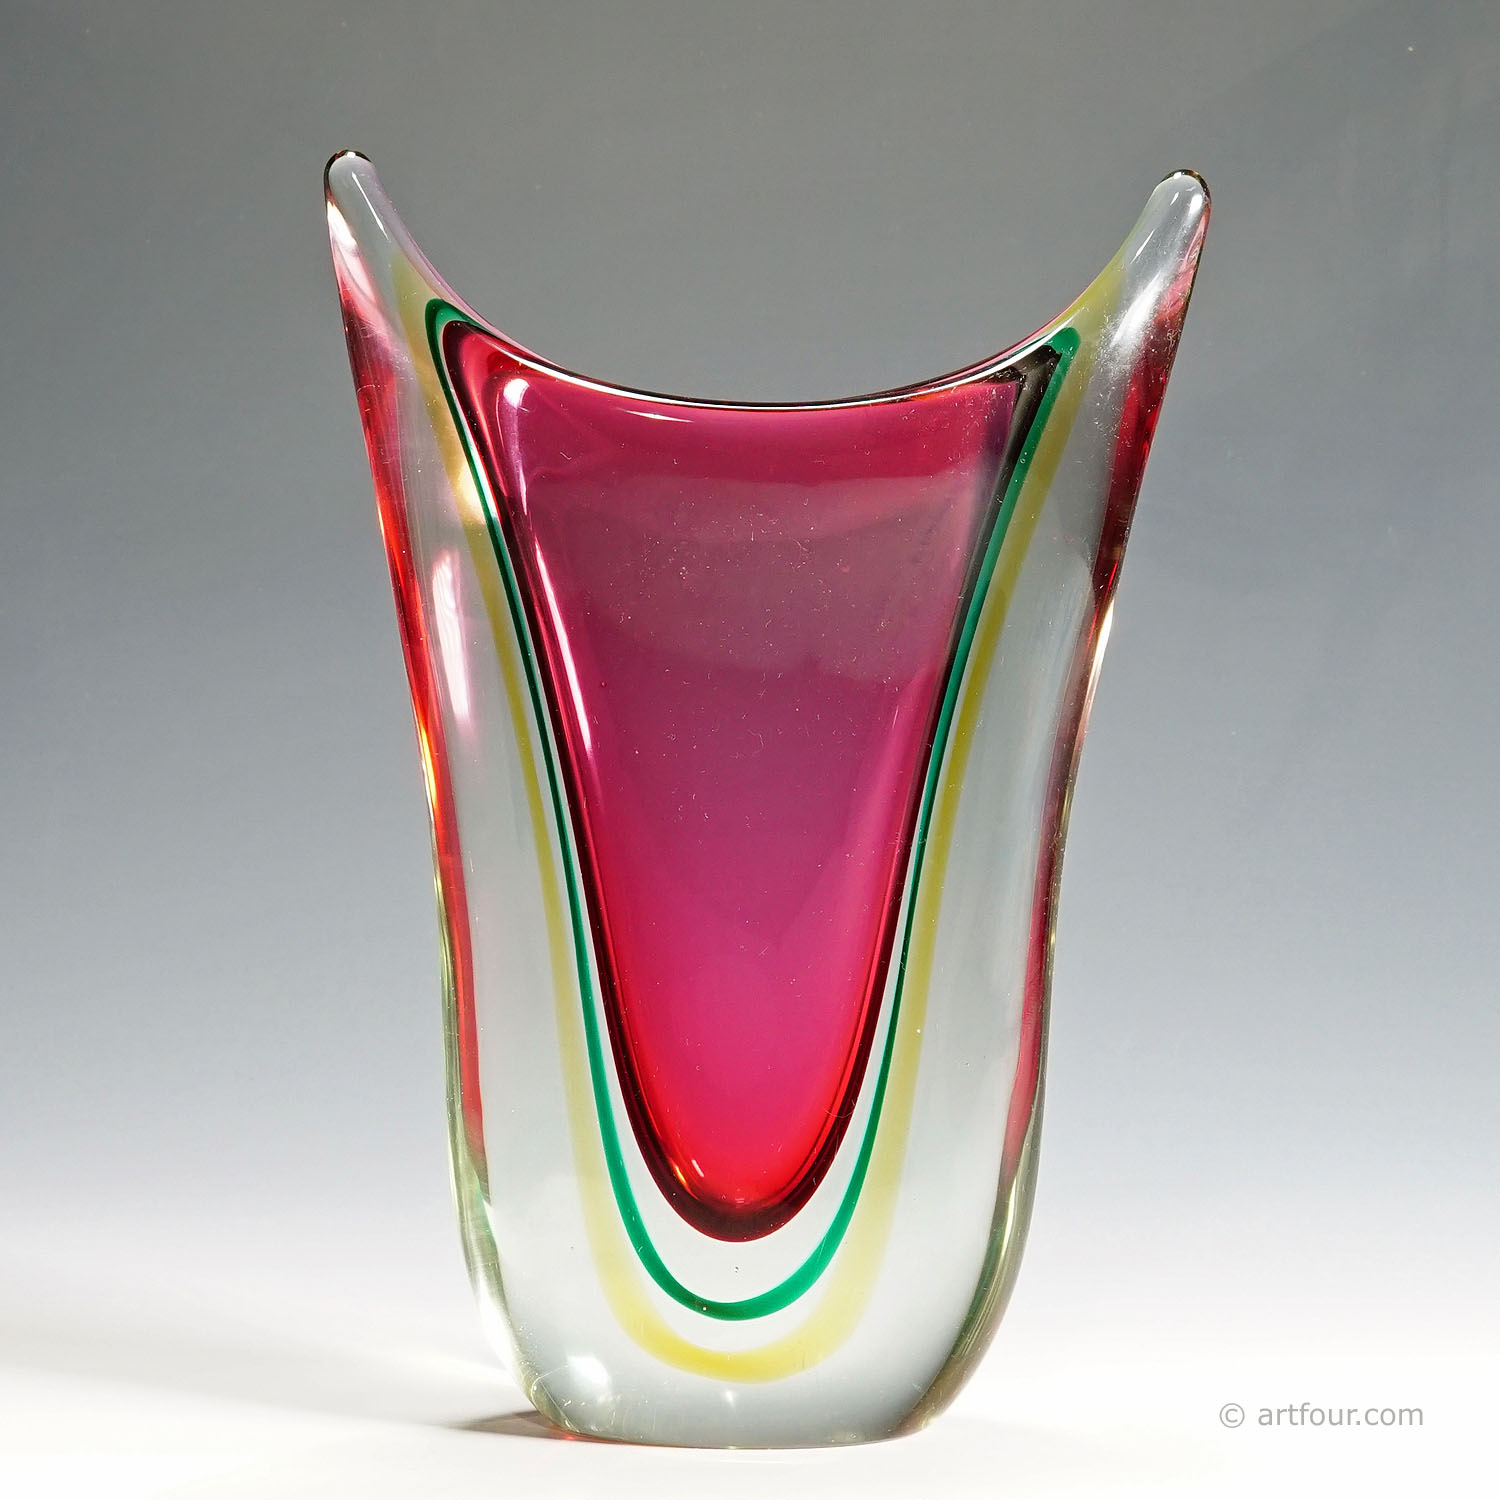 Midcentury Murano Sommerso Art Glass Vase by C.O.V.E.M 1960s